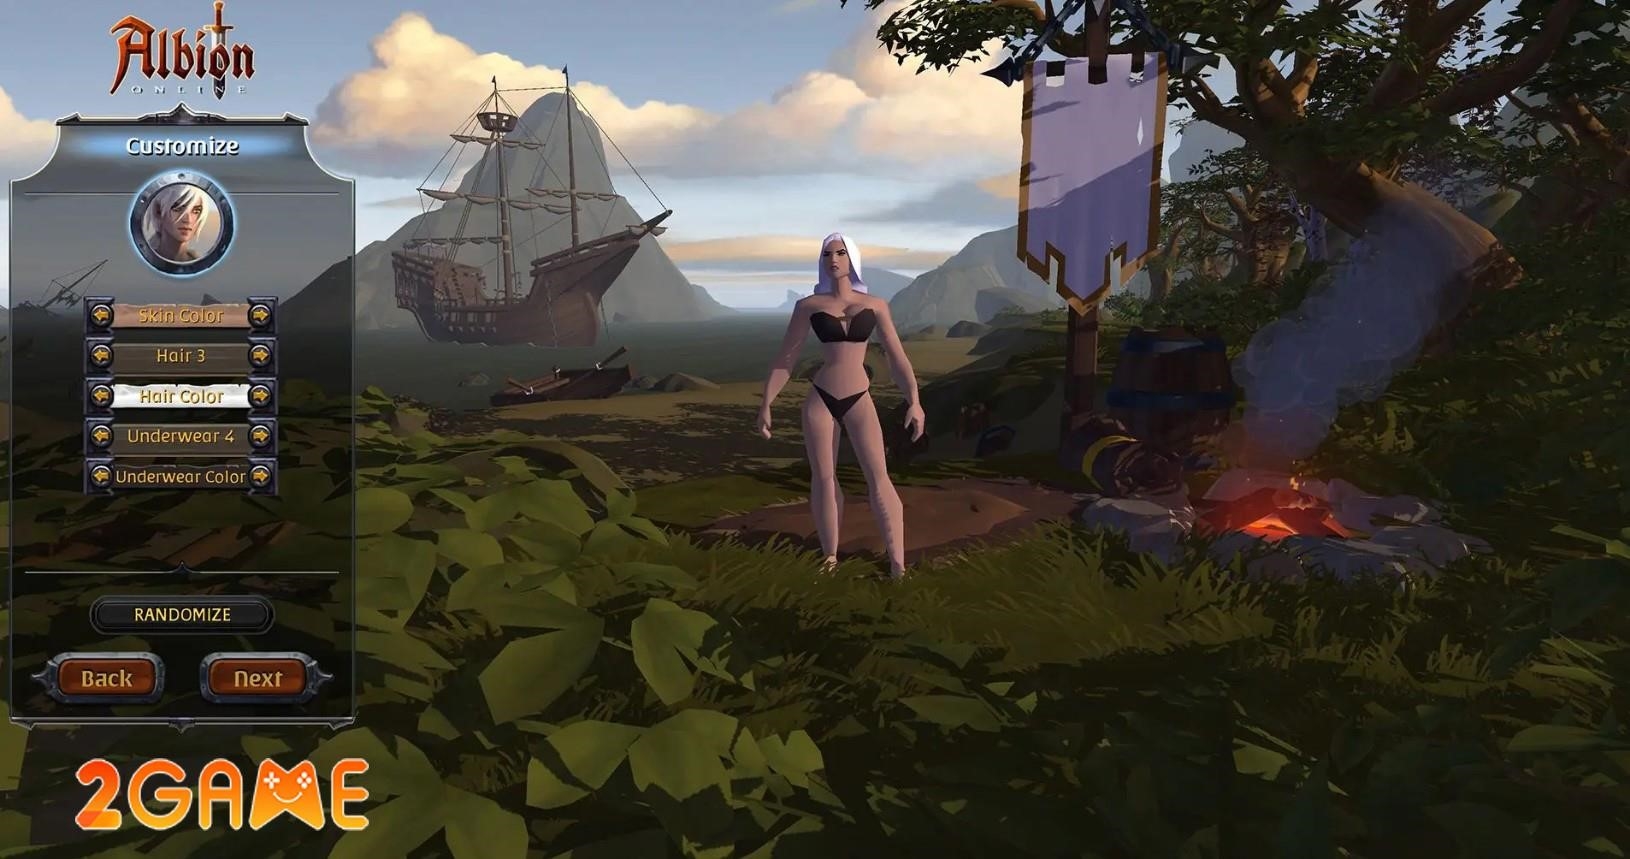 Khởi tạo nhân vật trong game là quá trình tạo ra một nhân vật ảo sẽ được người chơi điều khiển trong thế giới ảo của trò chơi, bao gồm việc lựa chọn các đặc điểm như giới tính, hình dáng, trang phục và các kỹ năng ban đầu để tham gia vào cuộc phiêu lưu trong trò chơi.